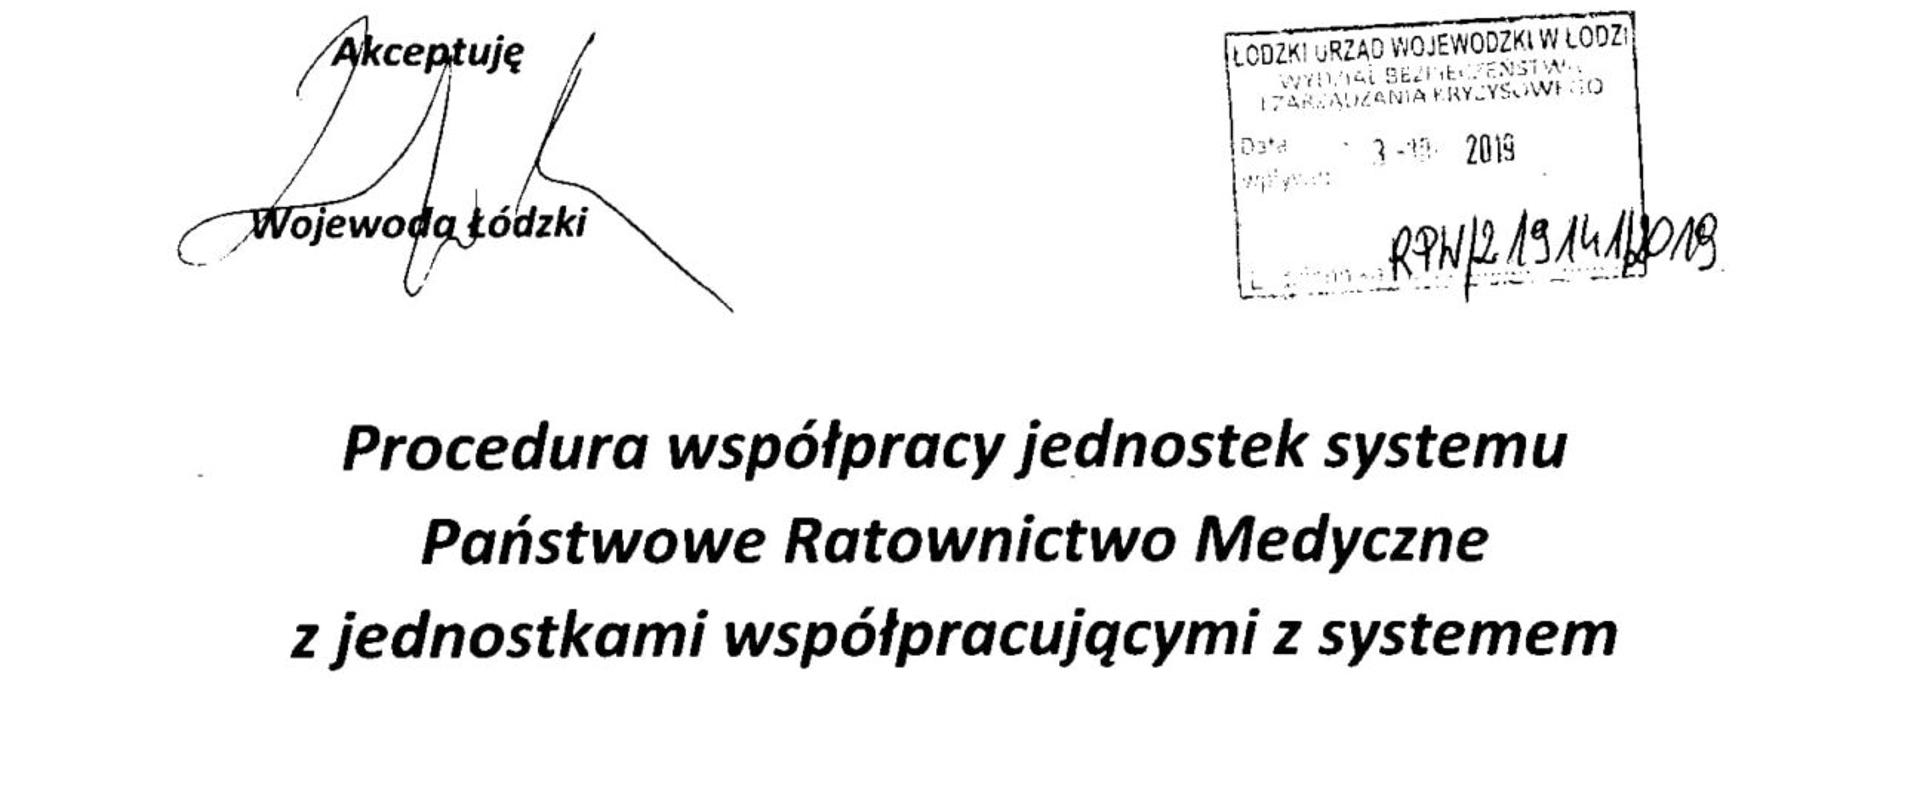 Pierwsza strona procedury współpracy jednostek systemu PRM z jednostkami współpracującymi z systemem. Dokument zaakceptowany przez wojewodę łódzkiego . Łódź, wrzesień 2019 r.